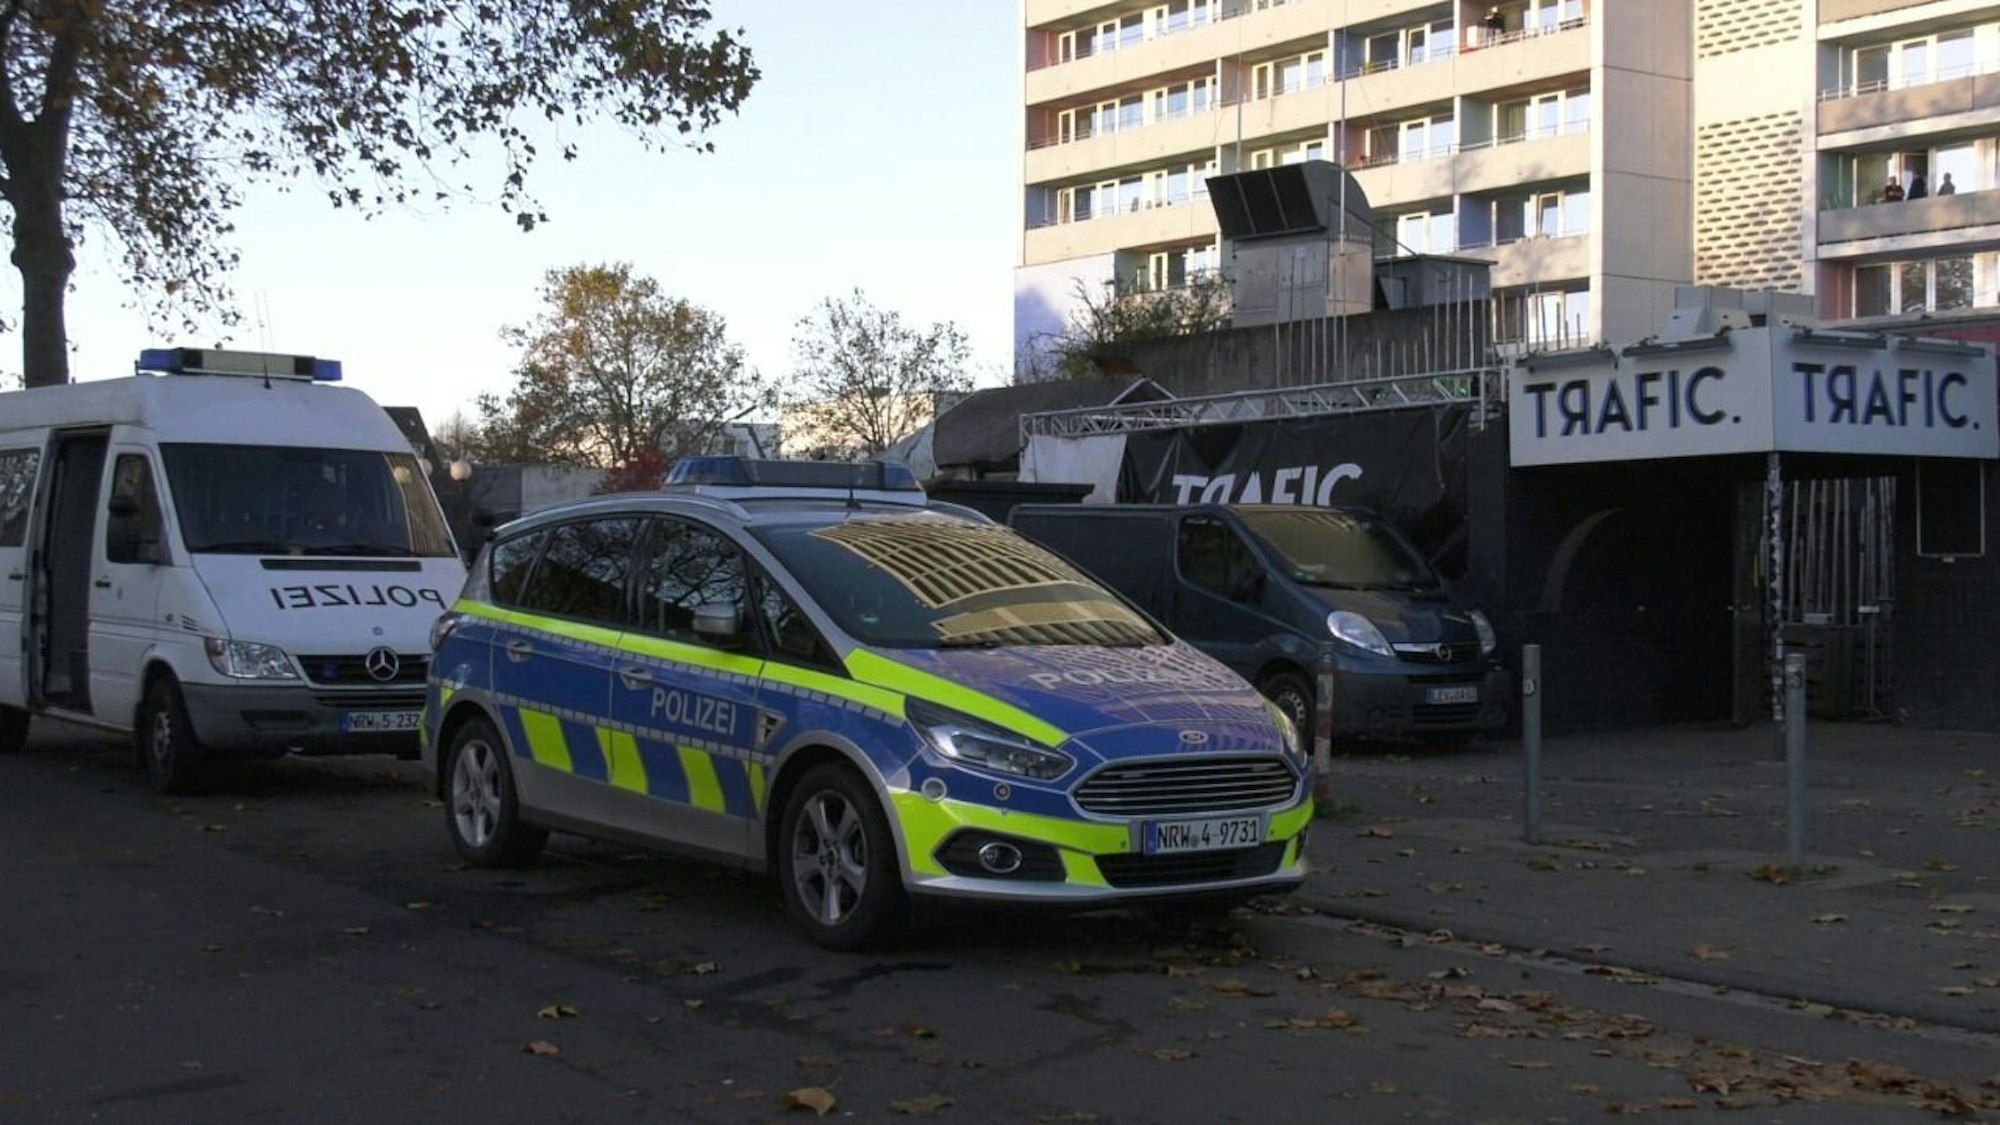 Zwei Polizeifahrzeuge stehen vor einem Club mit der Aufschrift „Trafic“ in Köln.Wegen eines Tötungsdeliktes am 1. November 2021 ist Anklage gegen einen 17-Jährigen erhoben worden.